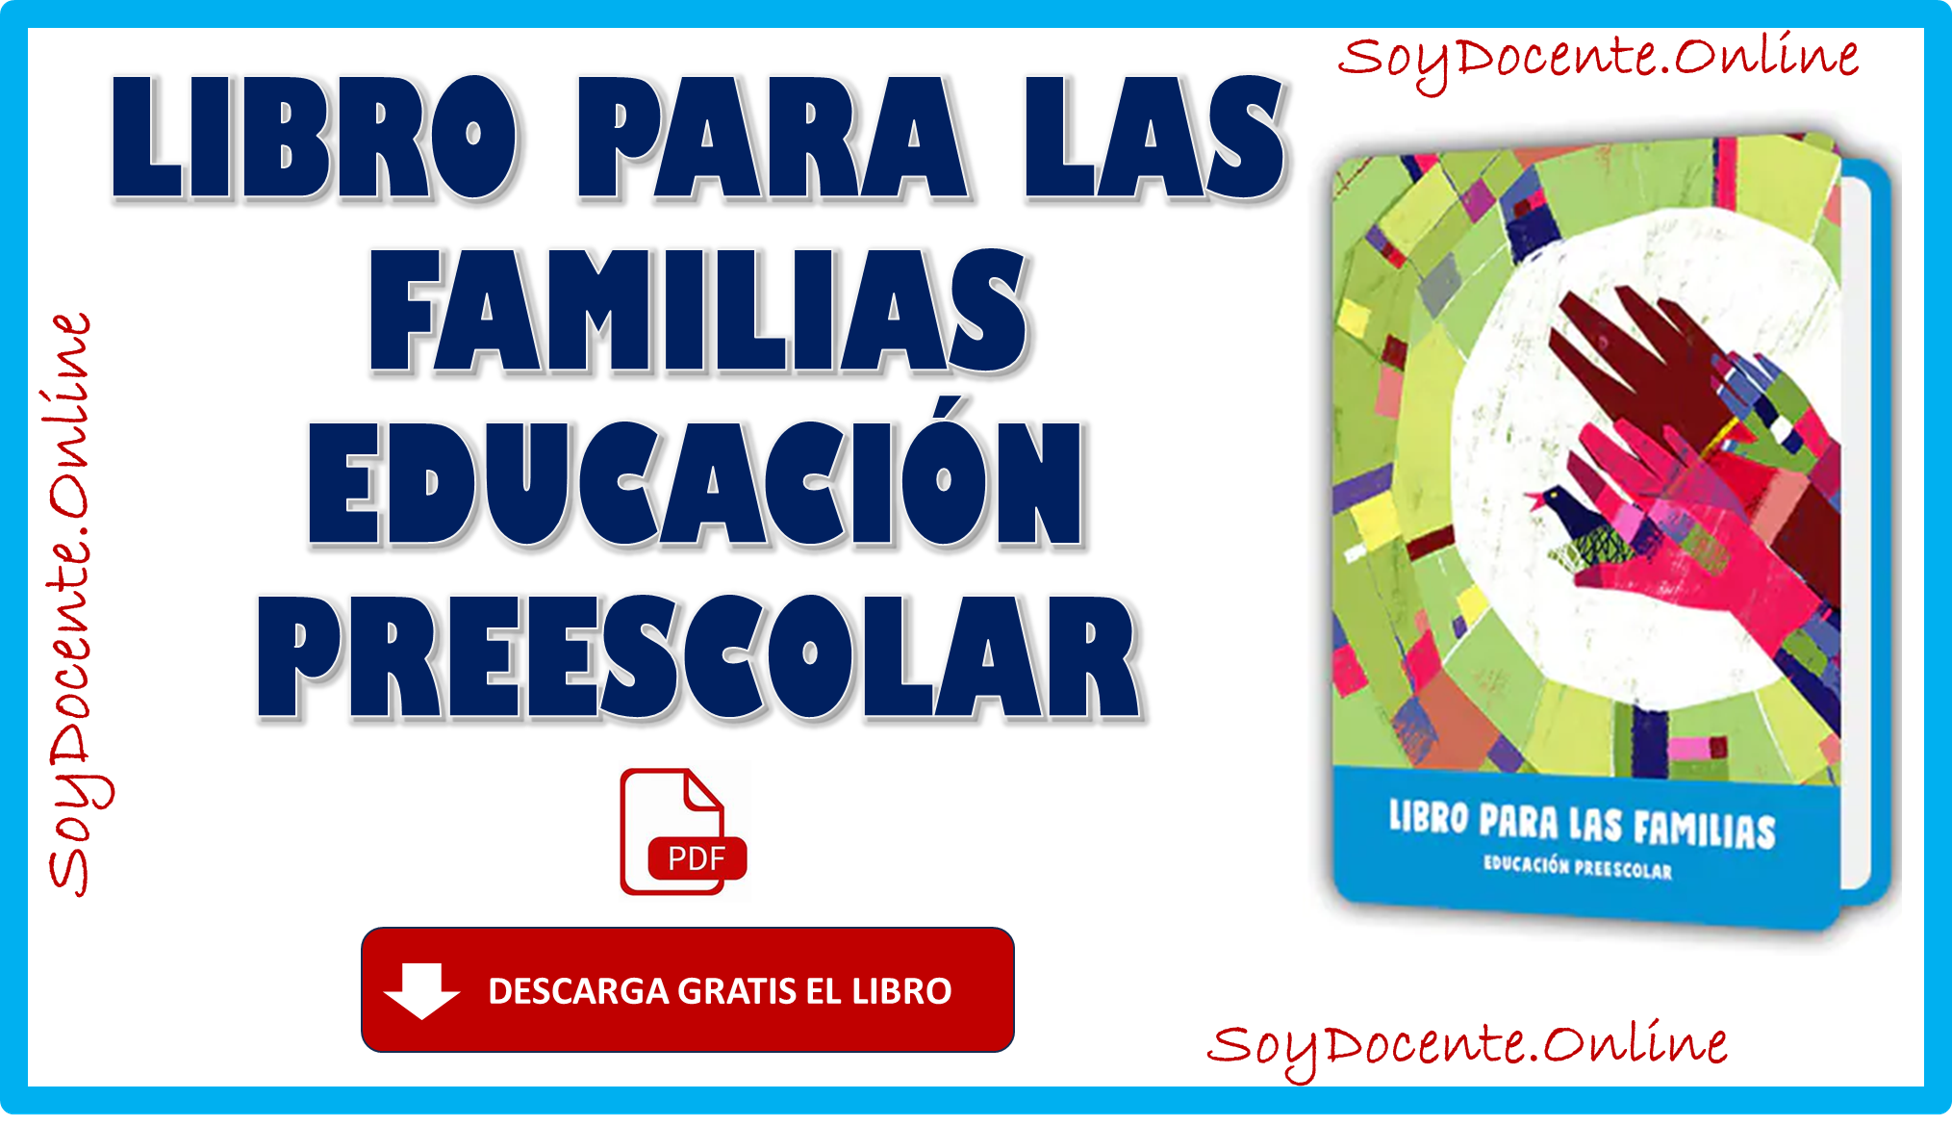 Ahora ya puedes descargar el Libro para las familias complementario de Preescolar, por la SEP, distribuido por la CONALITEG. Descarga en formato PDF.